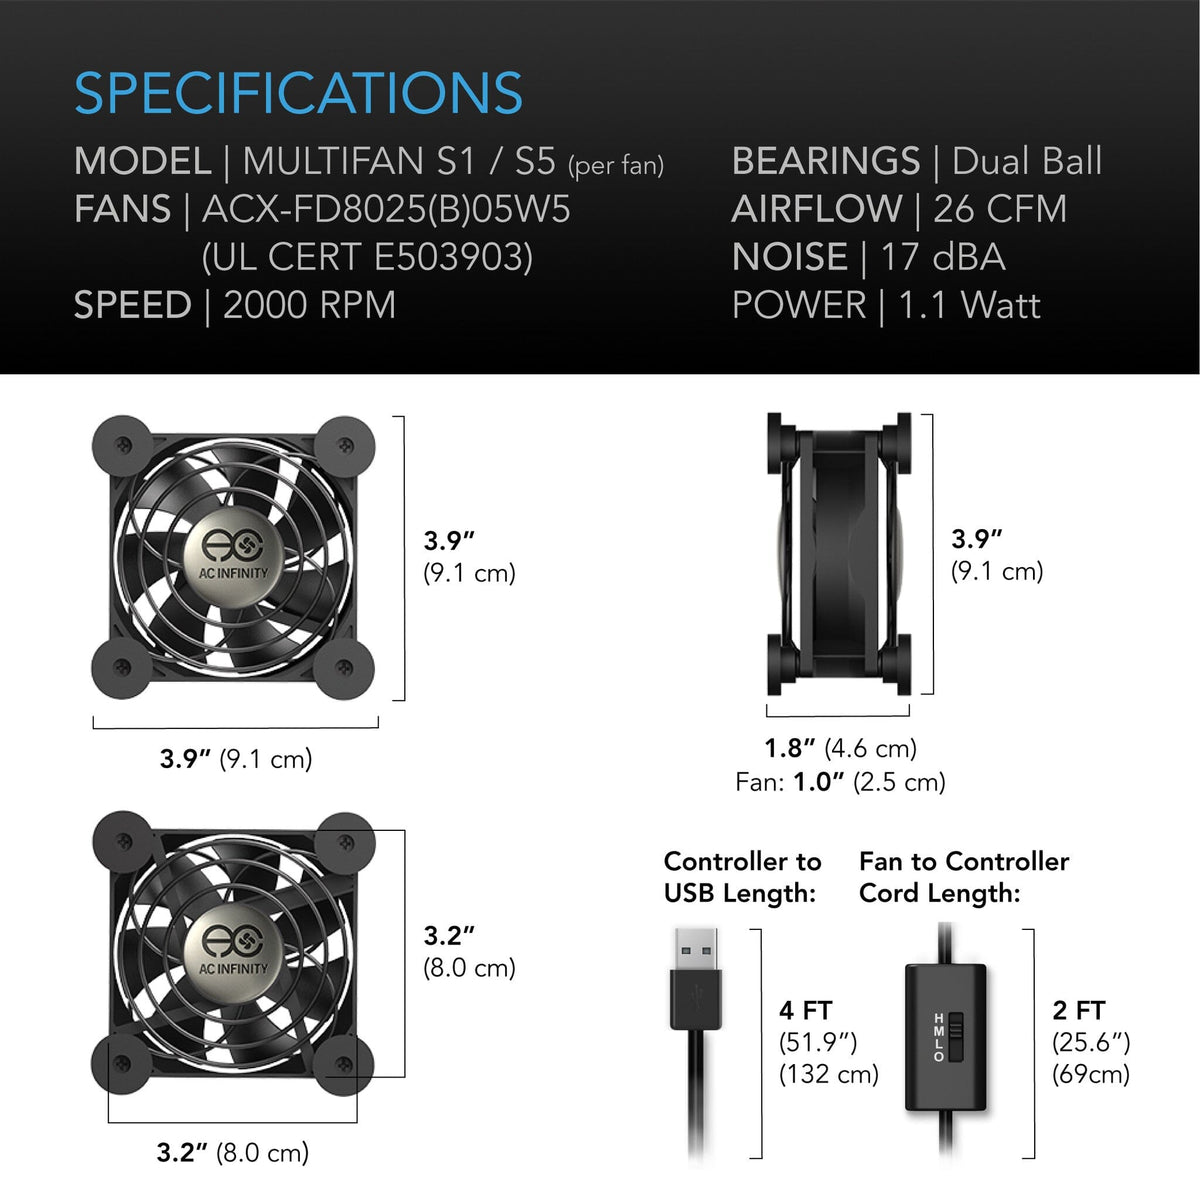 Multifan S1 Specifications